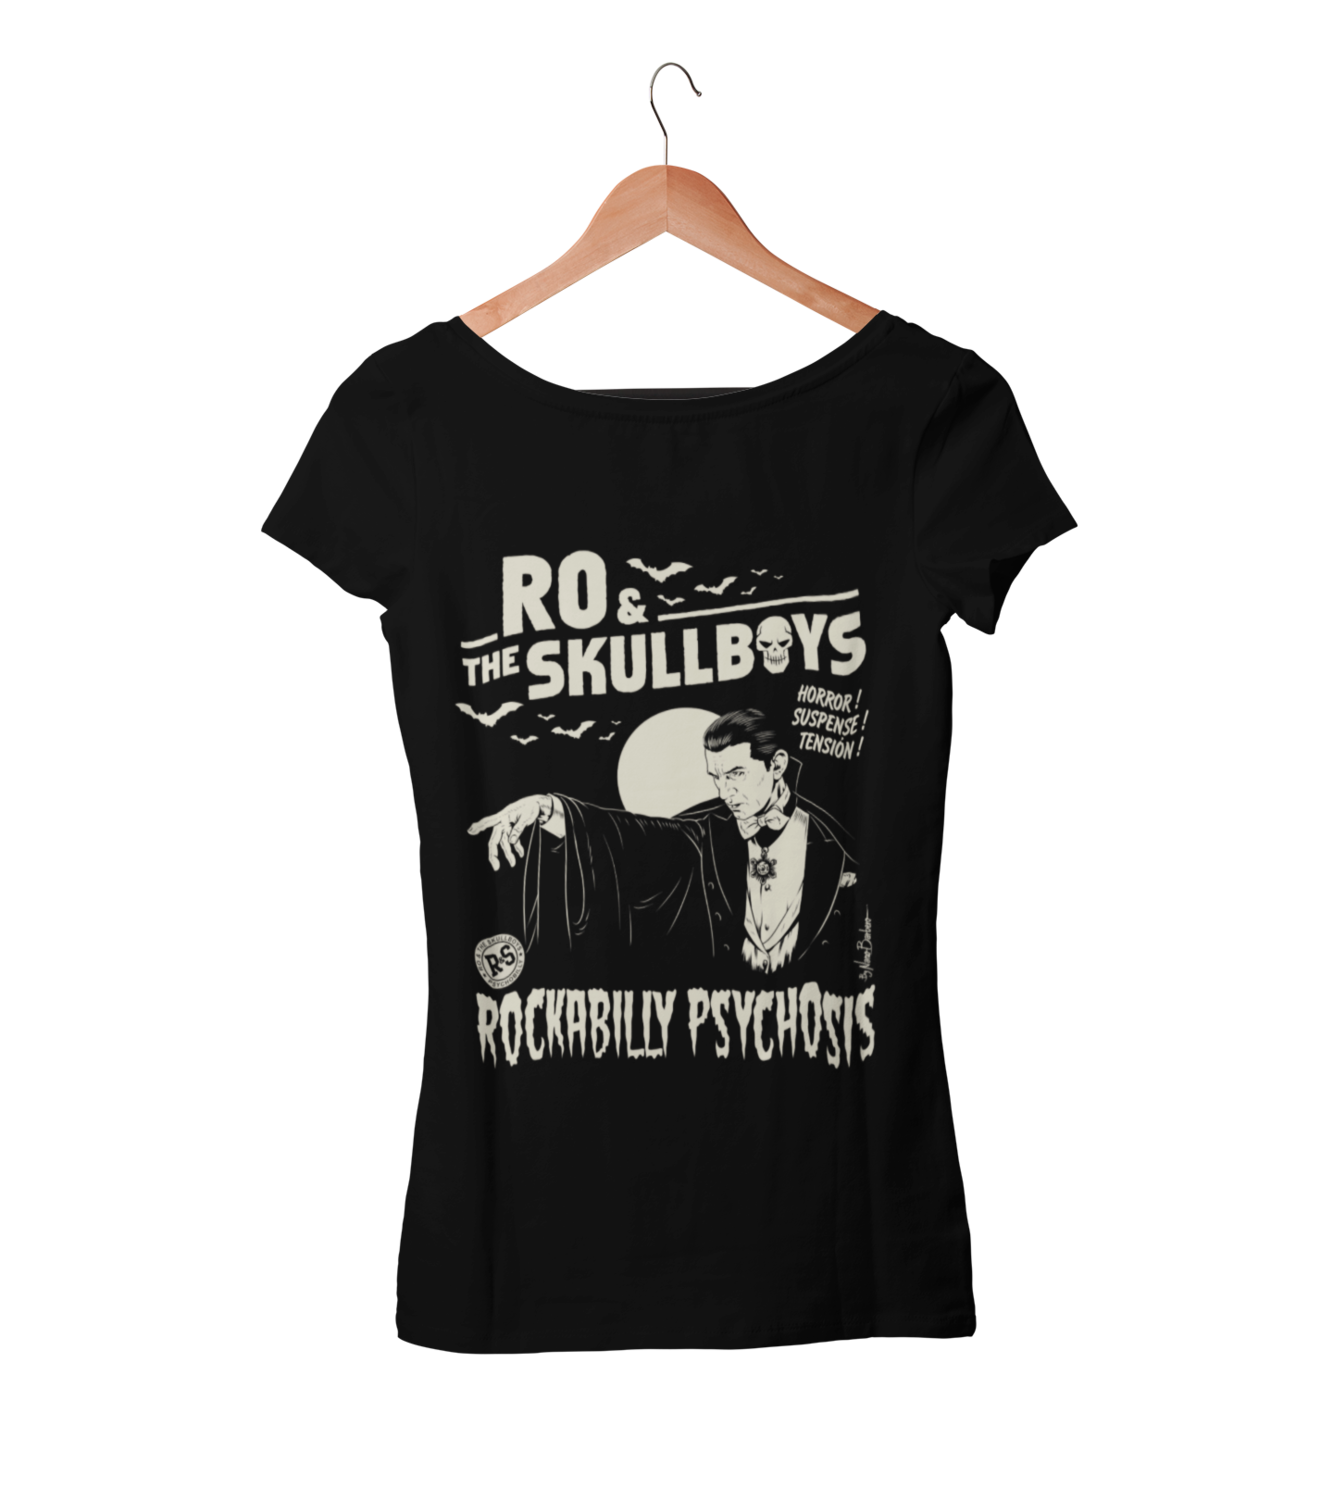 RO & THE SKULLBOYS "Rockabilly Psychosis" T-SHIRT WOMEN